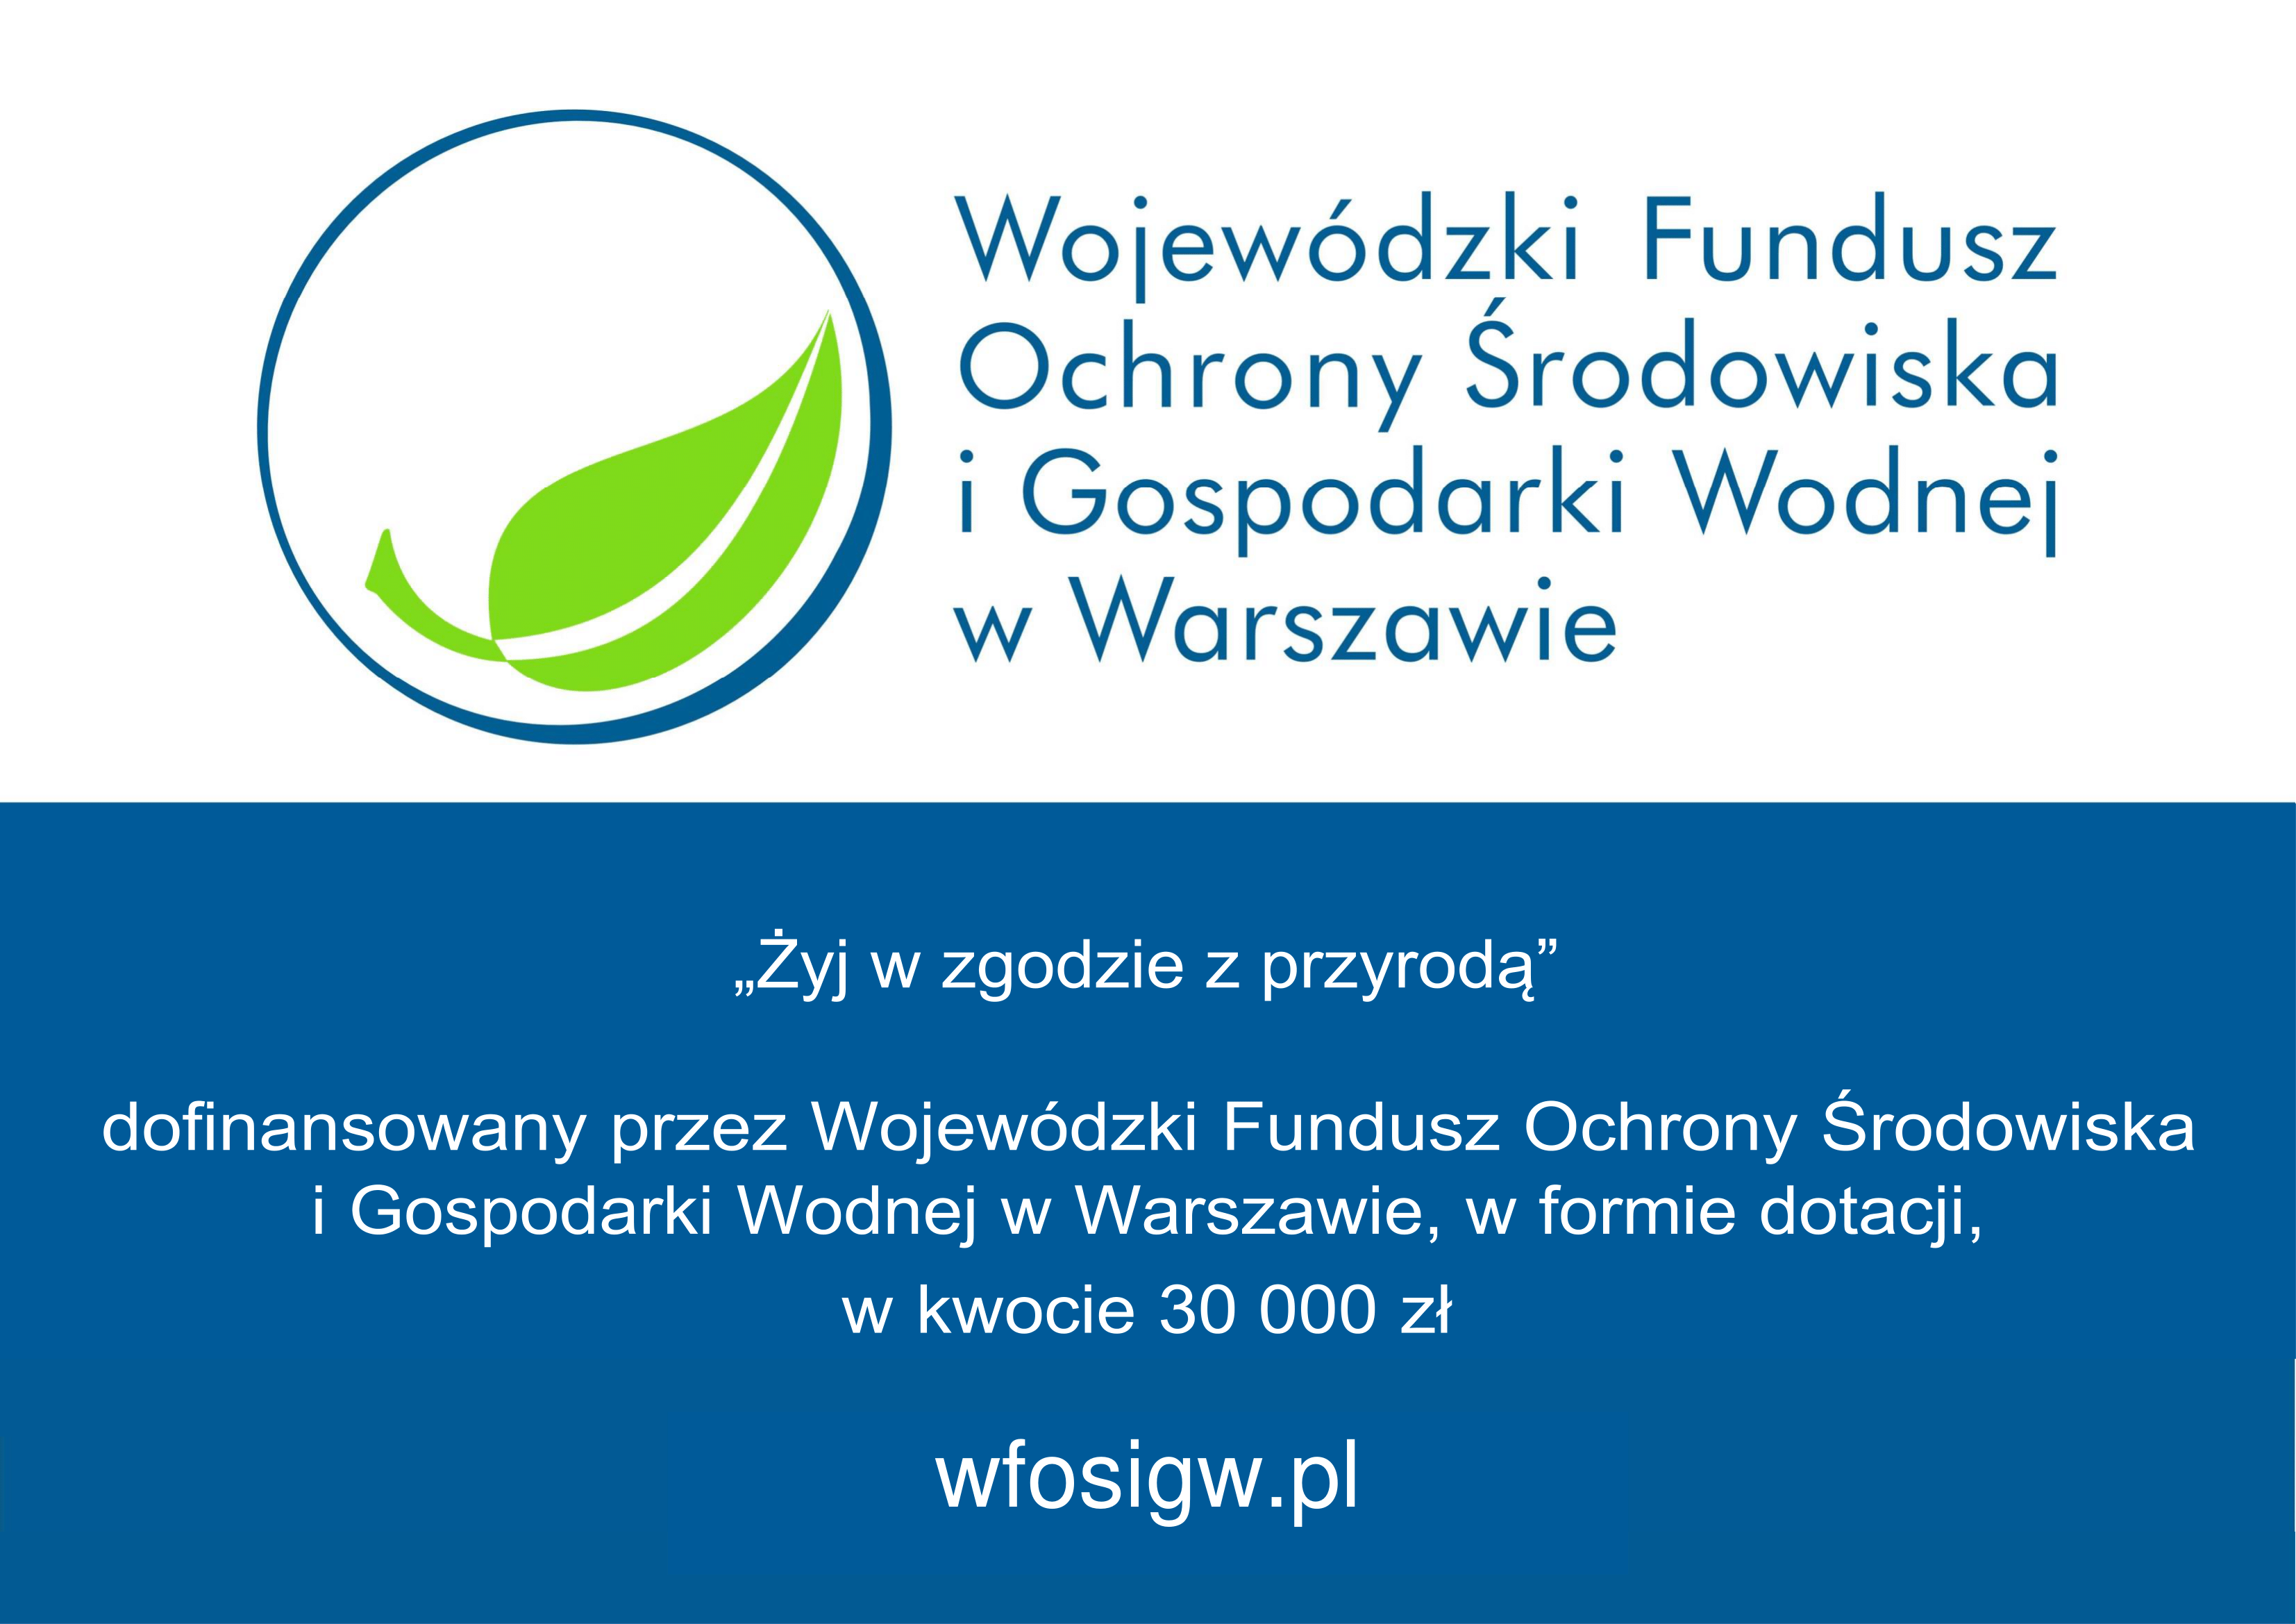 Dofinansowanie z Wojewódzkiego Funduszu Ochrony Środowiska i Gospodarki Wodnej w Warszawie